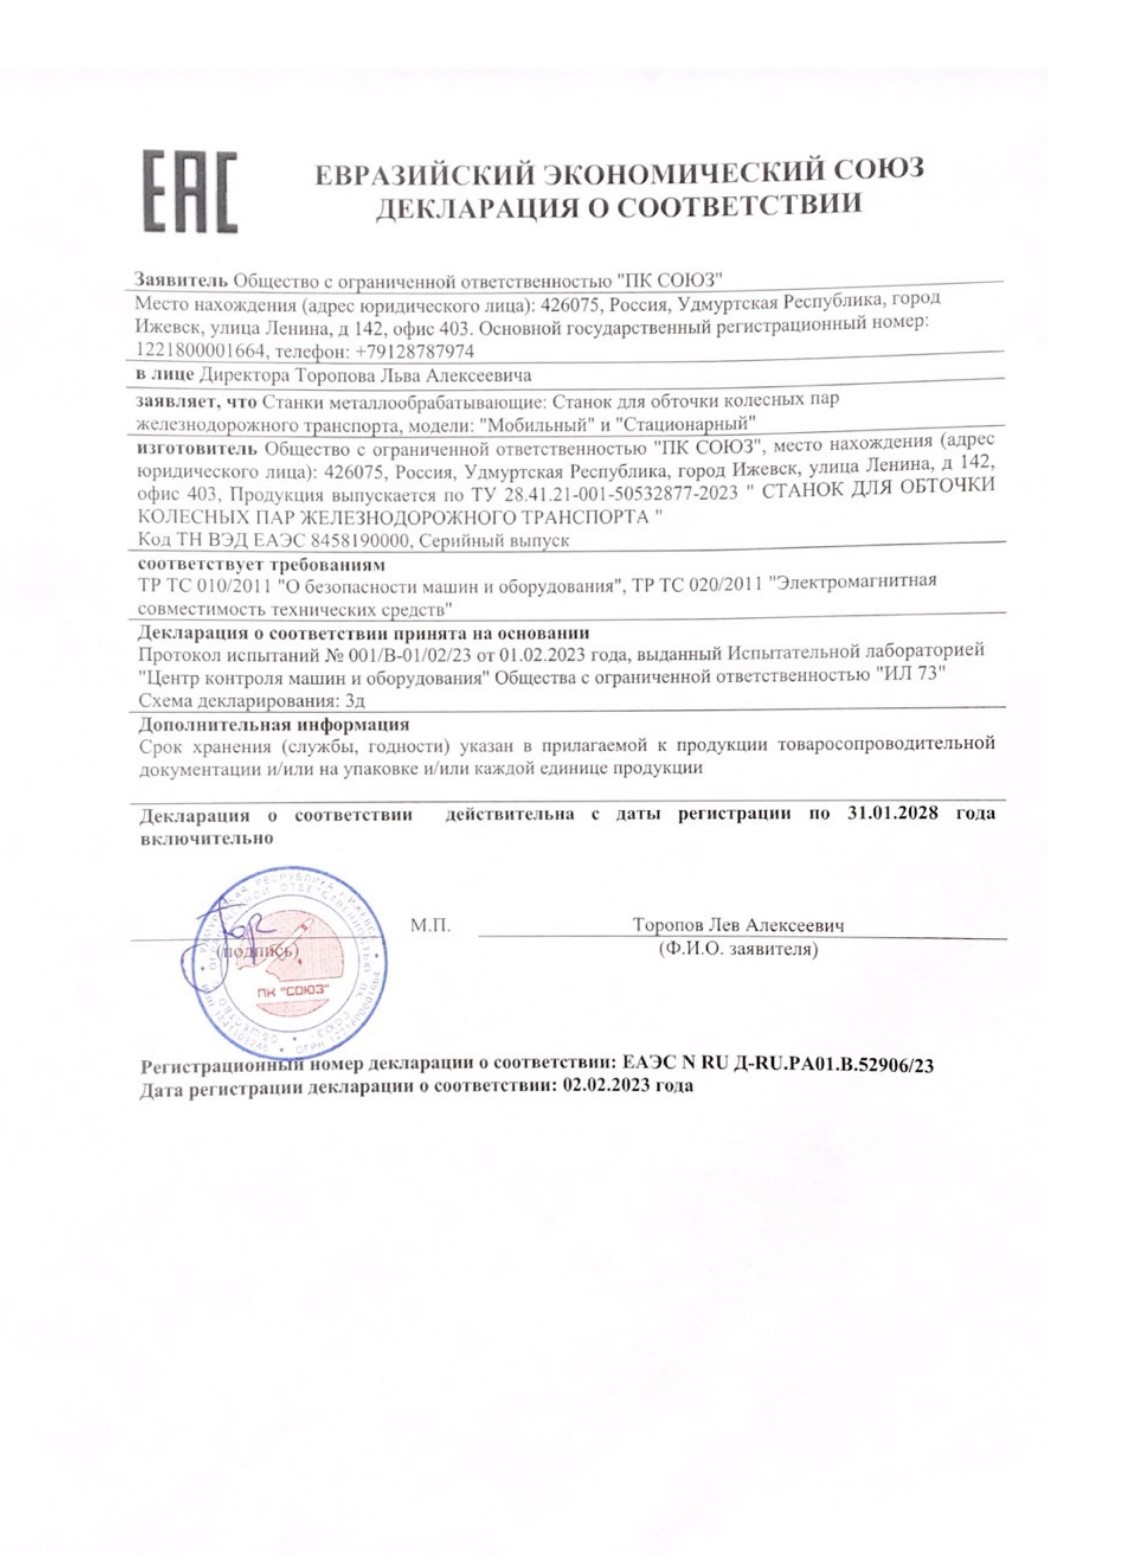 Декларация соответствия по на станки для обточки колесных пар ПК Союз